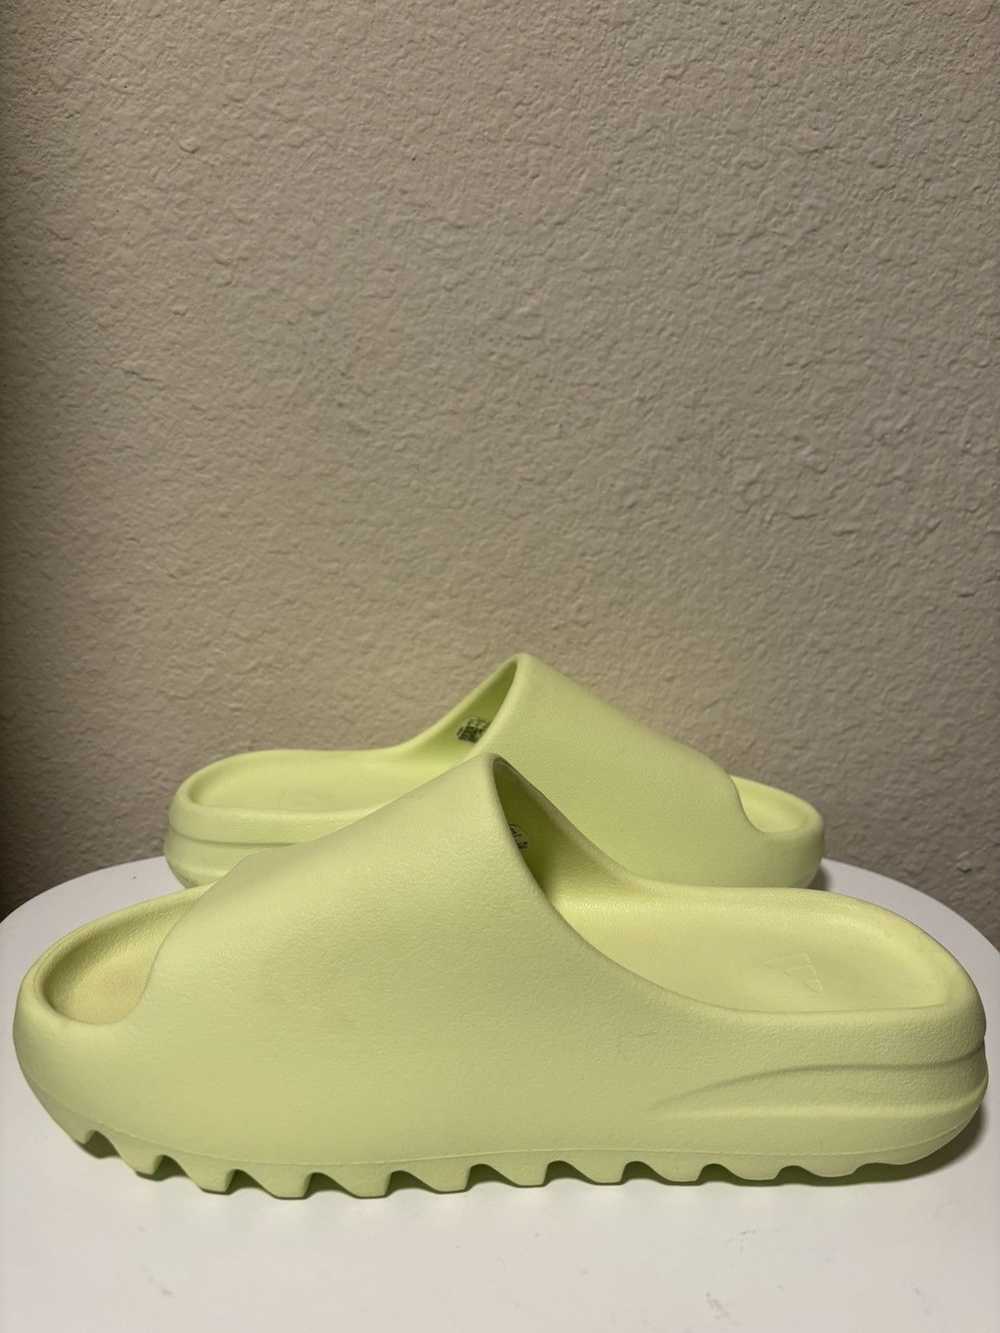 Yeezy Season Adidas Yeezy Slide “Glow Green”💚 - image 3